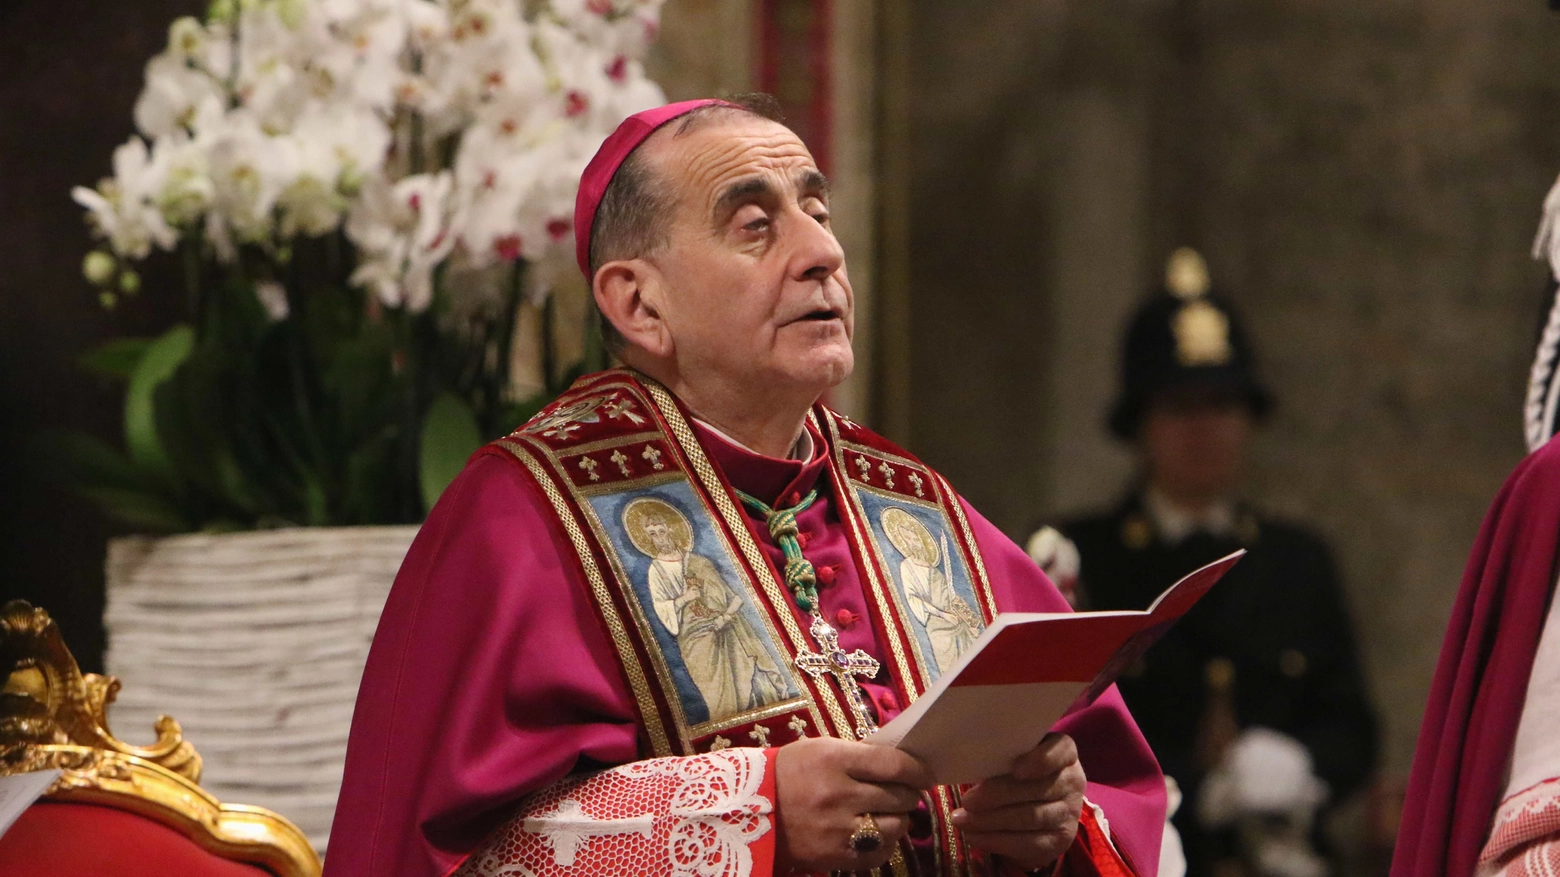 Arcivescovo Mario Delpini